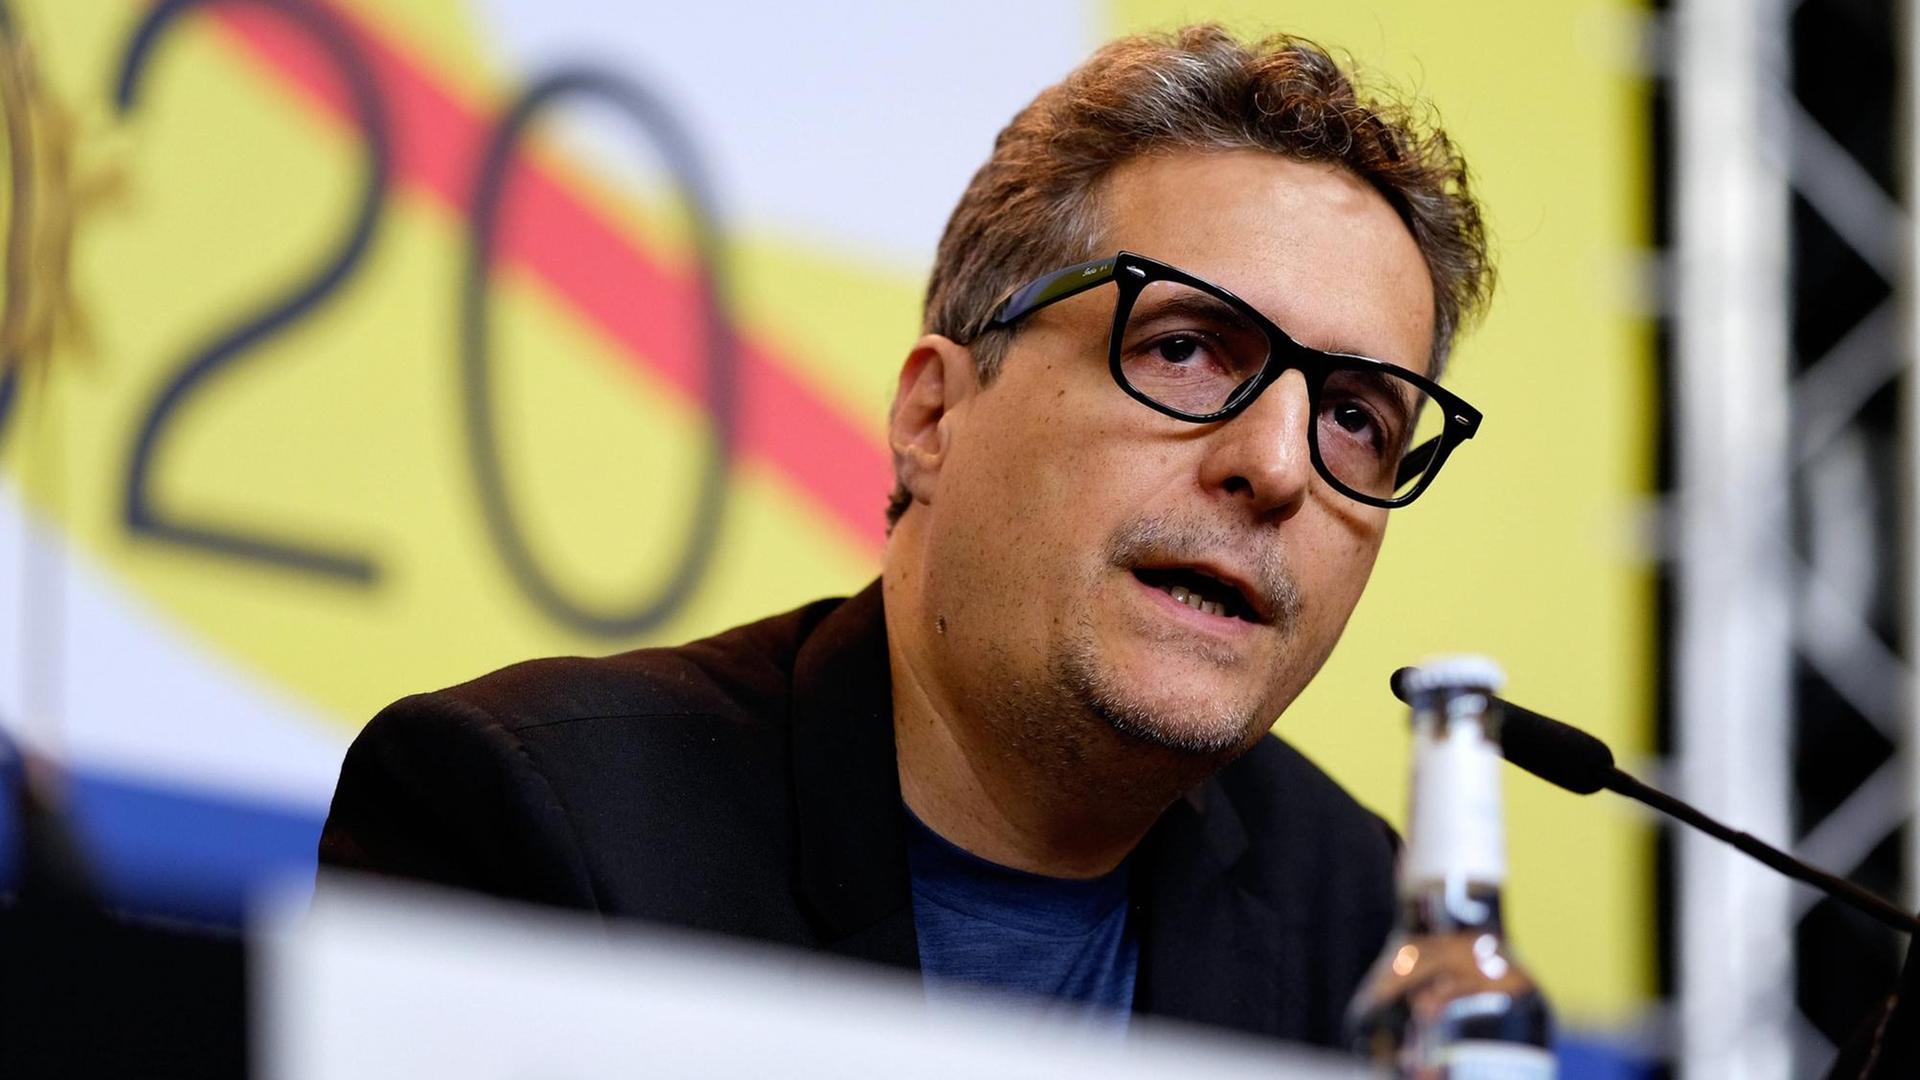 Regisseur Kleber Mendonça Filho bei der Pressekonferenz der Internationalen Jury anlässlich der 70. Internationalen Filmfestspiele Berlin